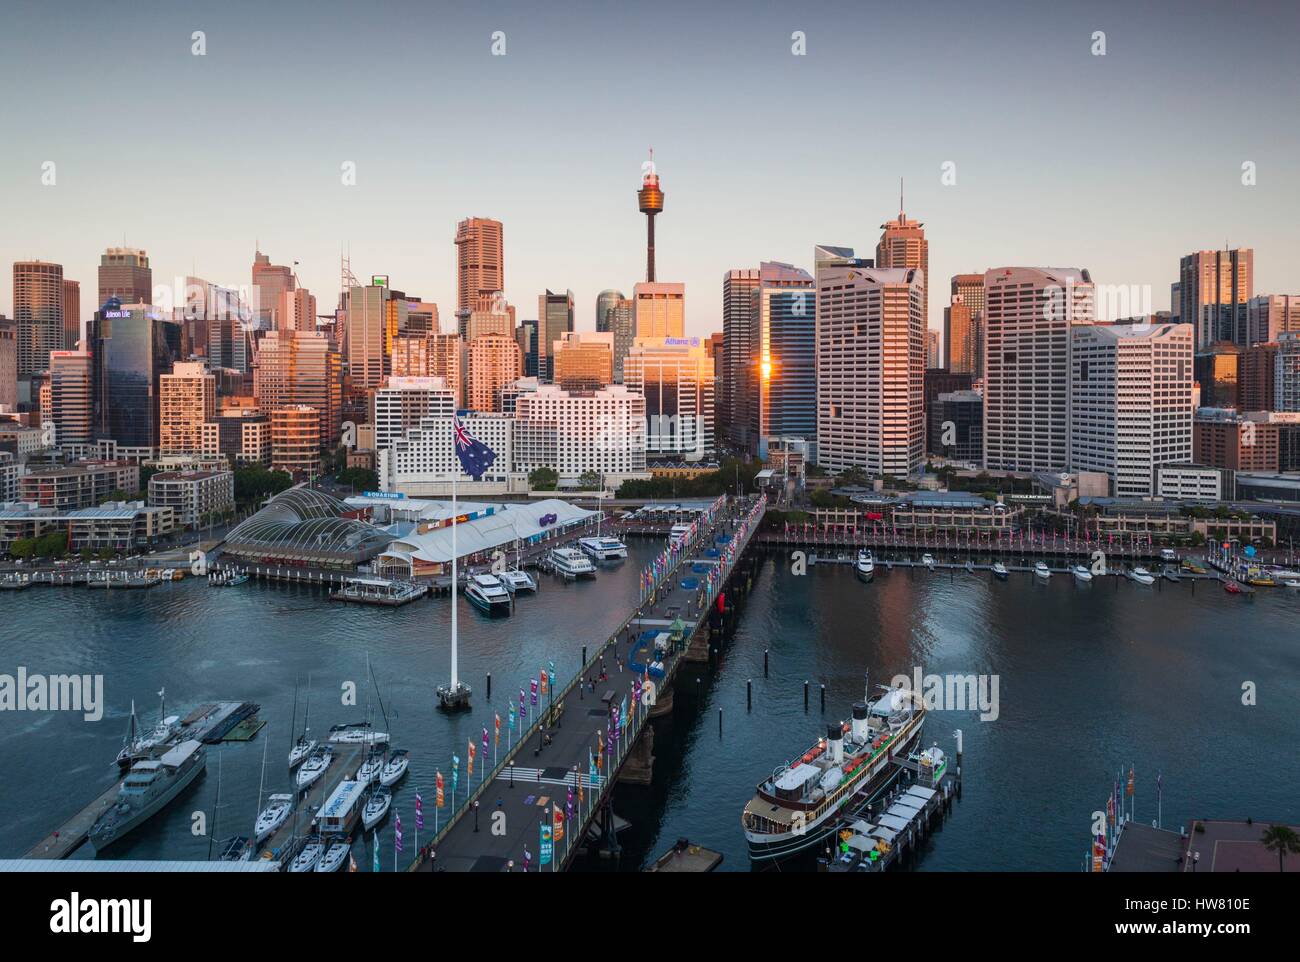 Australien, New South Wales, Sydney, CBD, Darling Harbour und Pyrmont Bridge, erhöhten Blick, Dämmerung Stockfoto